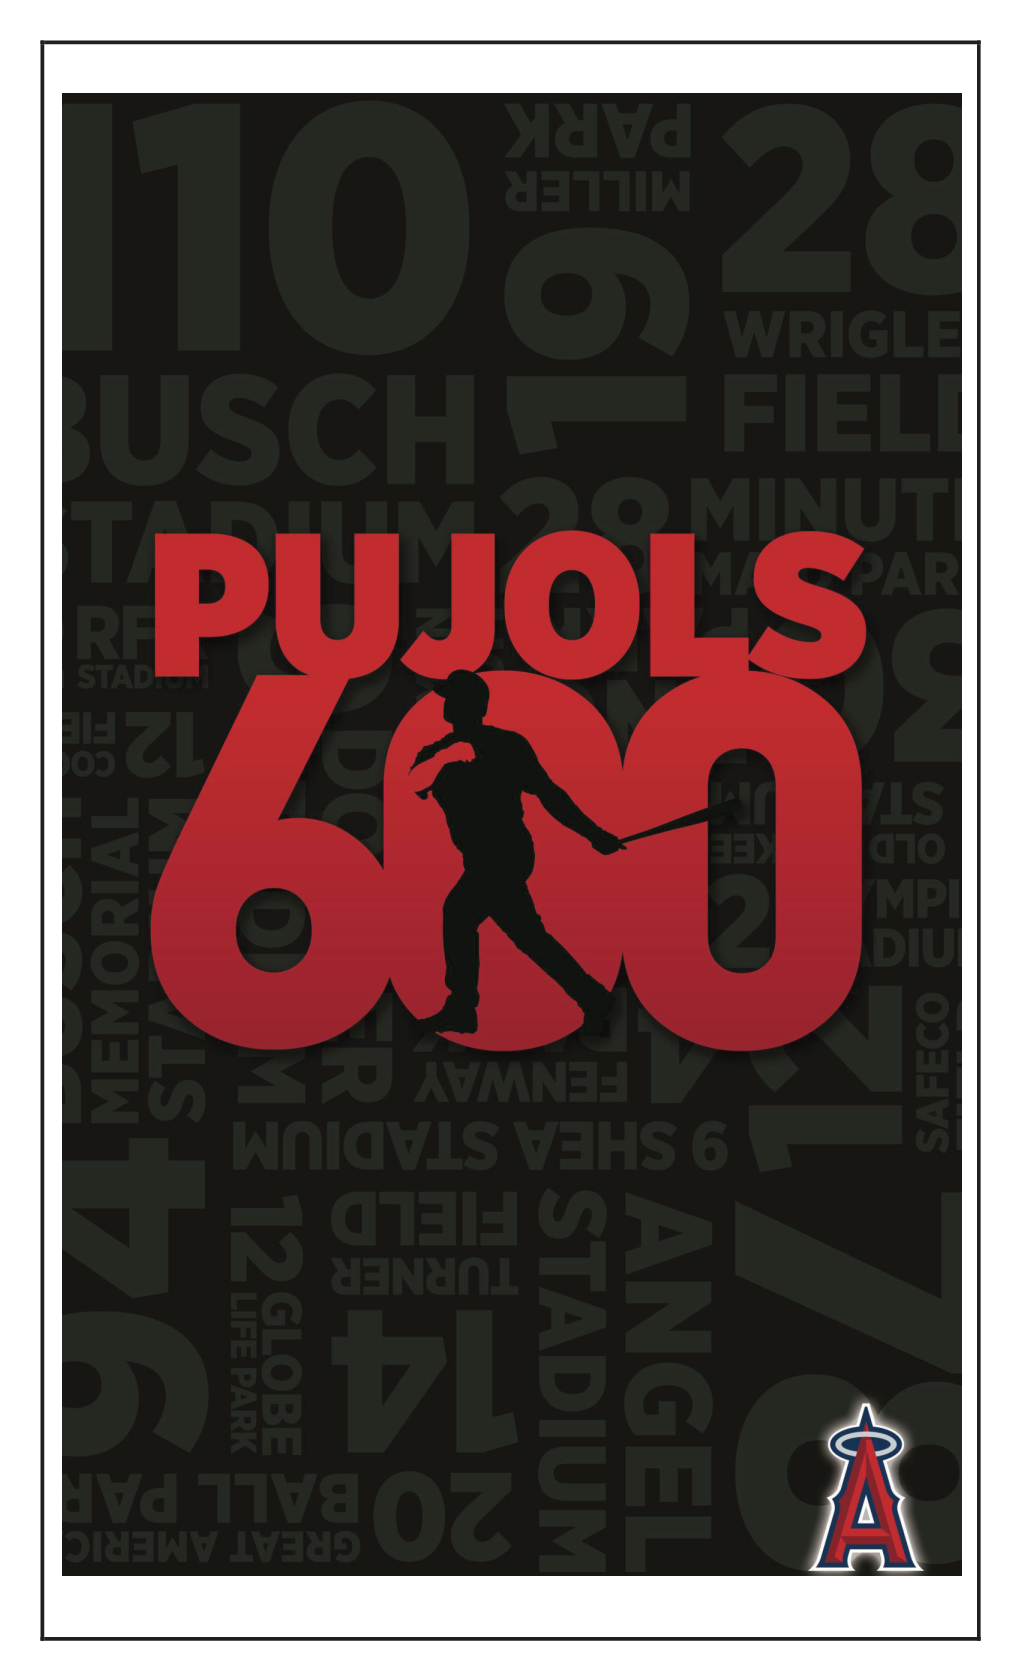 Albert Pujols Career Home Run Review